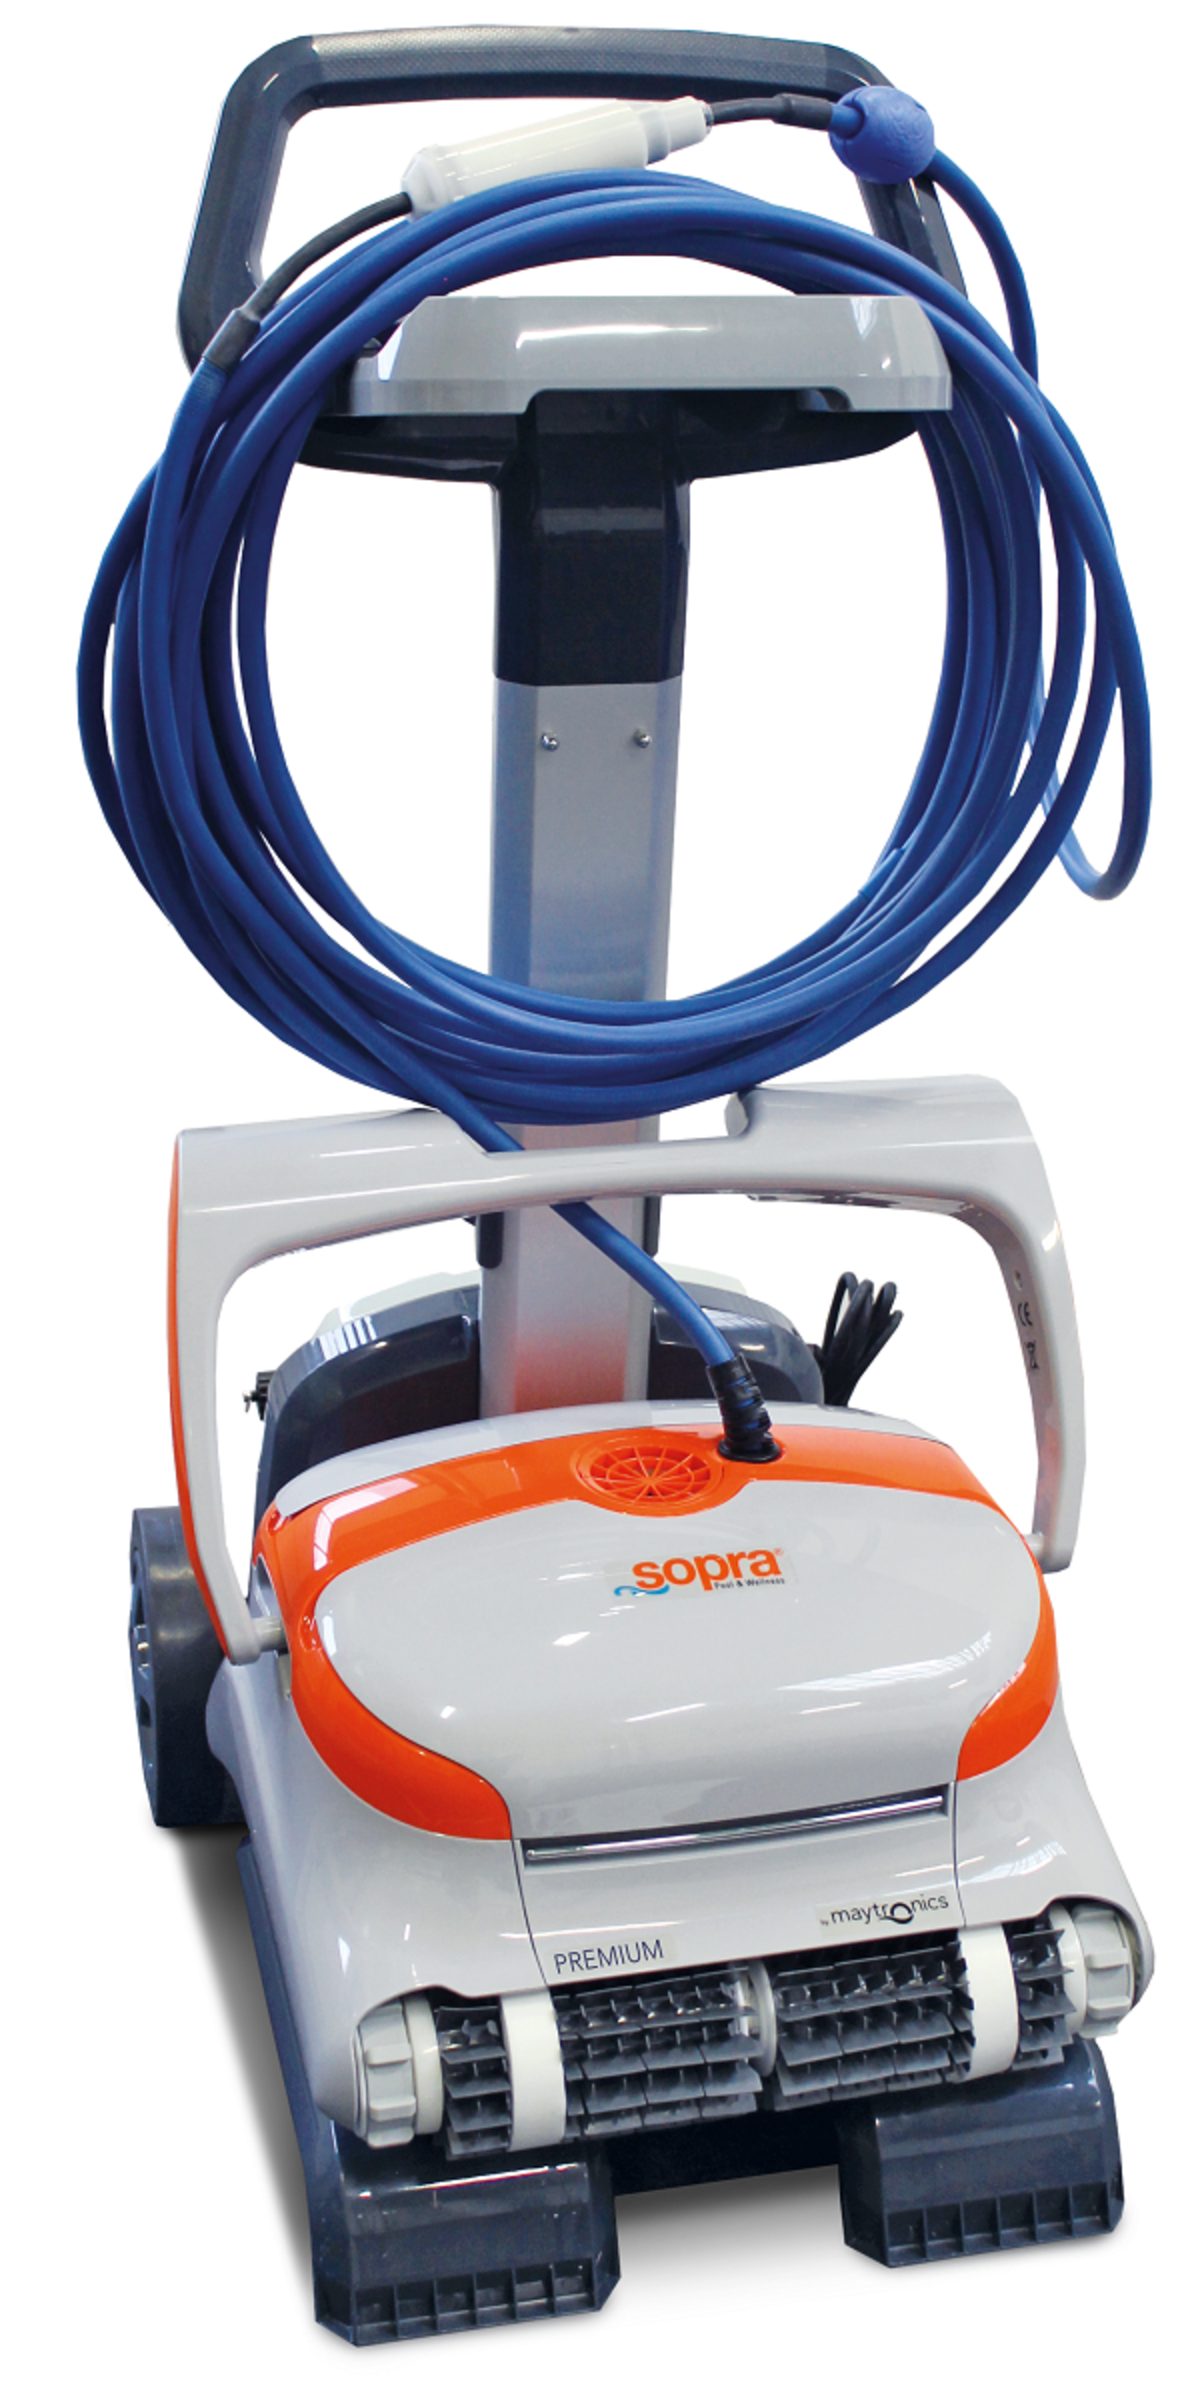 Der Poolreinigungsroboter sopra Premium Cleaner auf seinem Caddy.